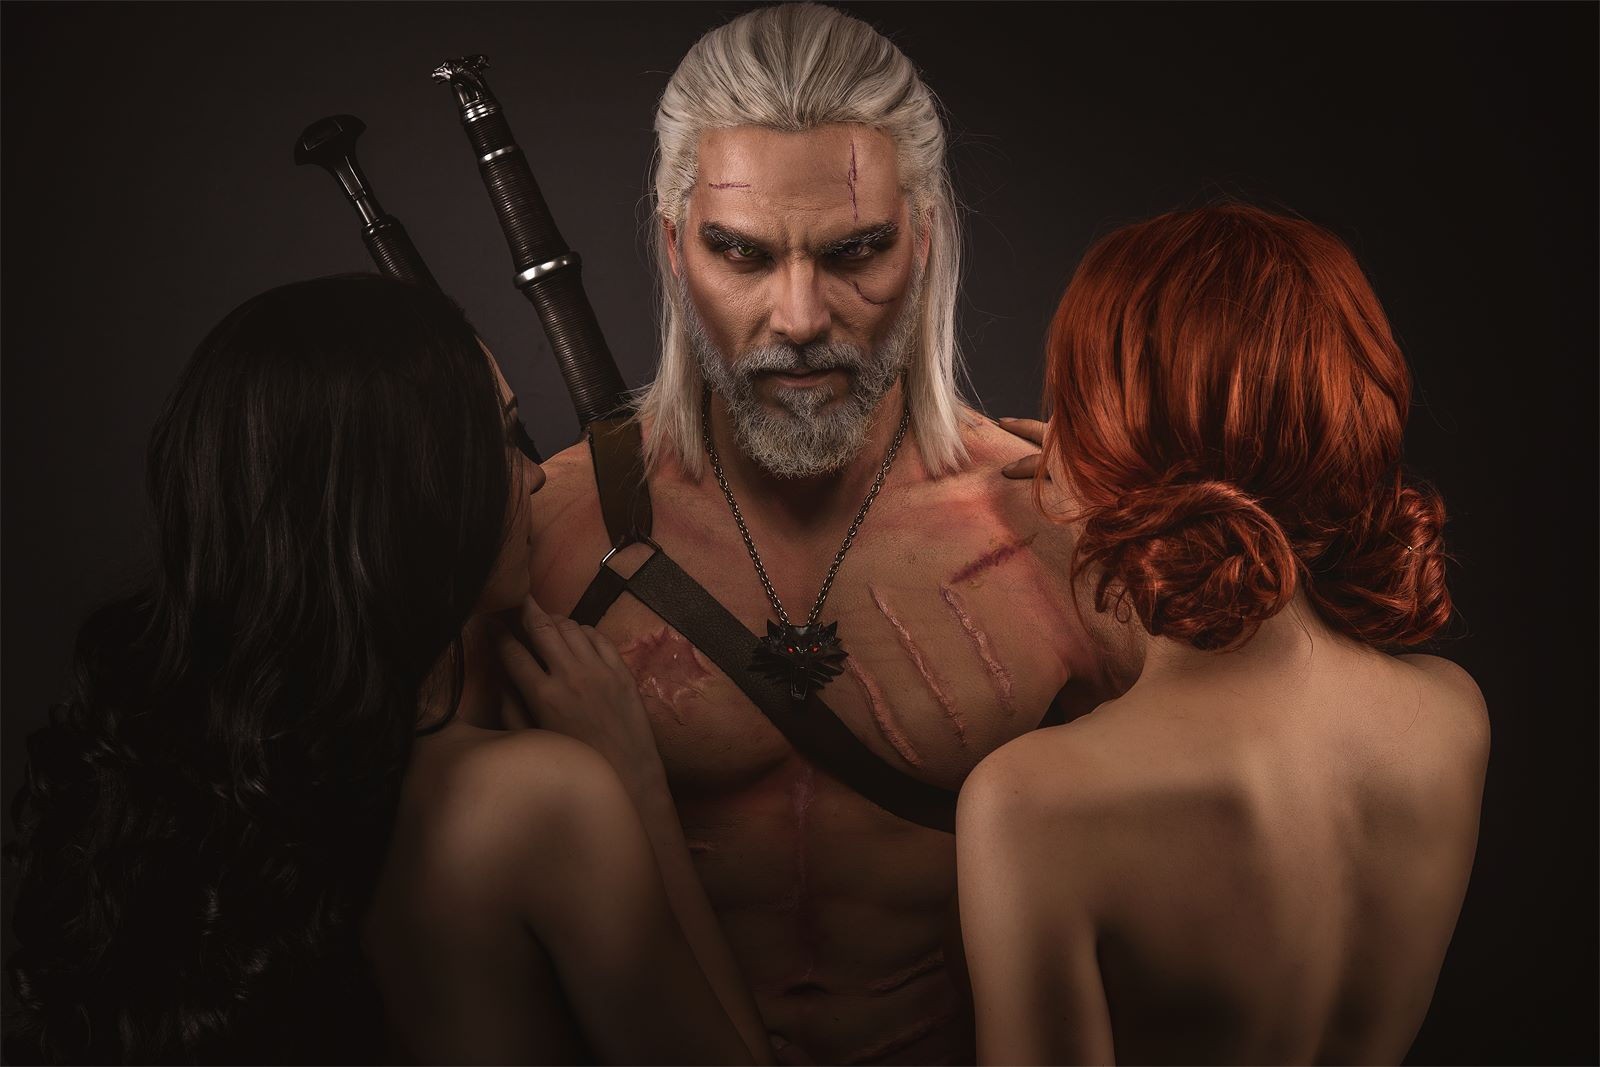 Красотки из видеоигры The Witcher 3 решили сделать главному герою глубокий минет